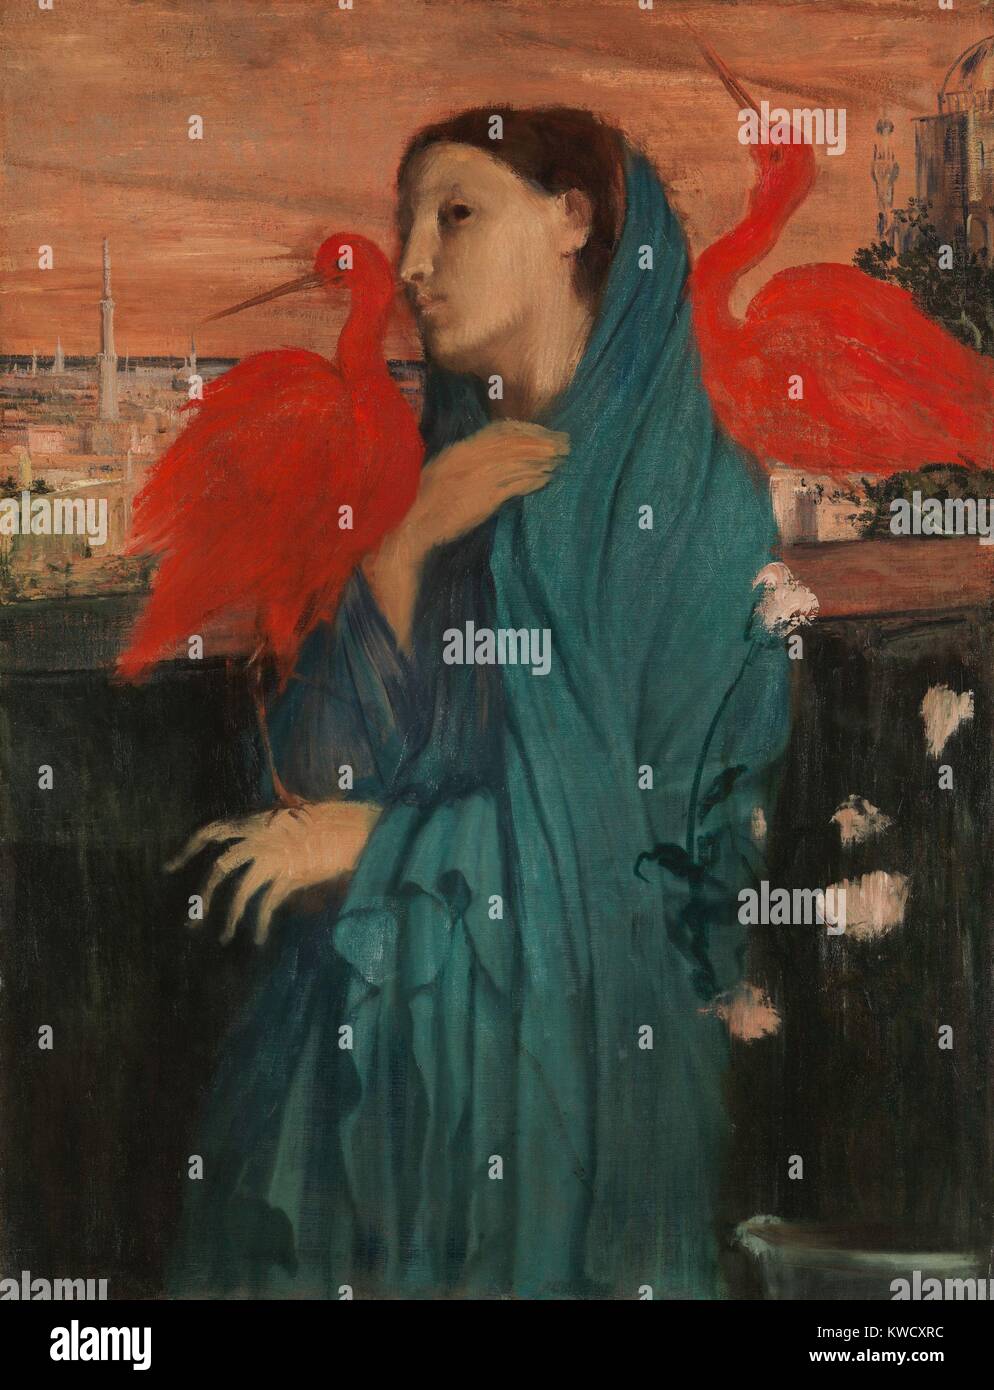 Mujer joven con Ibis, Edgar Degas, 1860-62, la pintura impresionista francesa, óleo sobre lienzo. Degas agregó fantasía a su retrato de una mujer con el imaginario rojo ibis y un paisaje de Oriente Medio (BSLOC 2017 3 96) Foto de stock